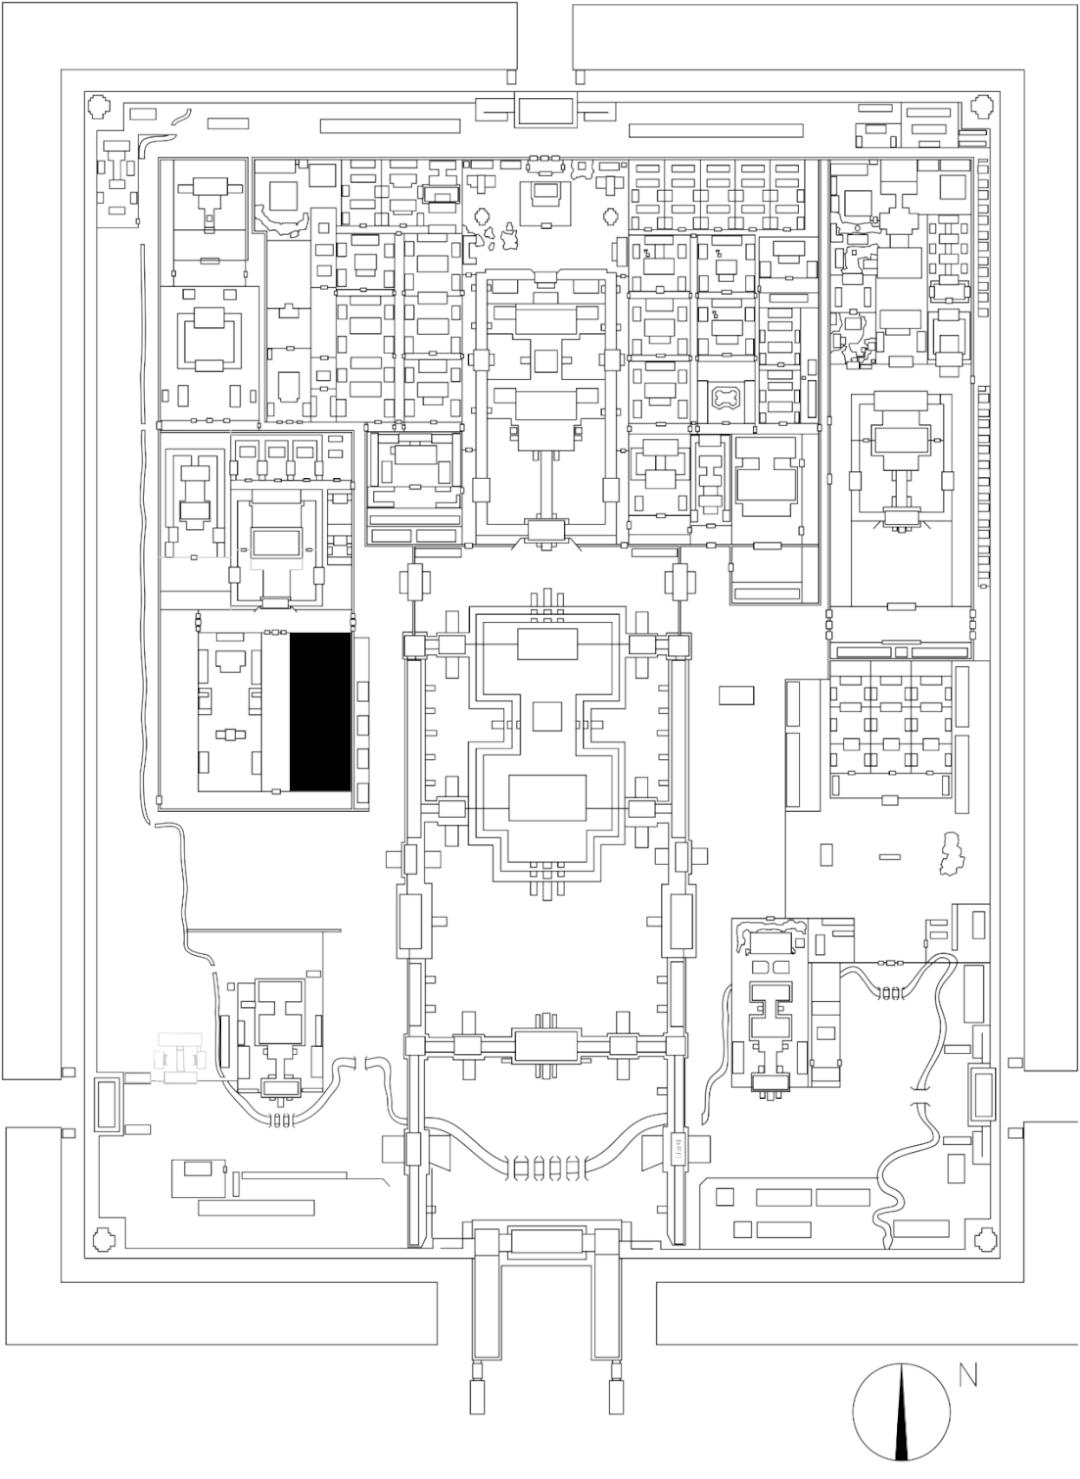 紫禁城考古重大收获—清宫造办处旧址发现面积最大遗址区，再现古今重叠型建筑